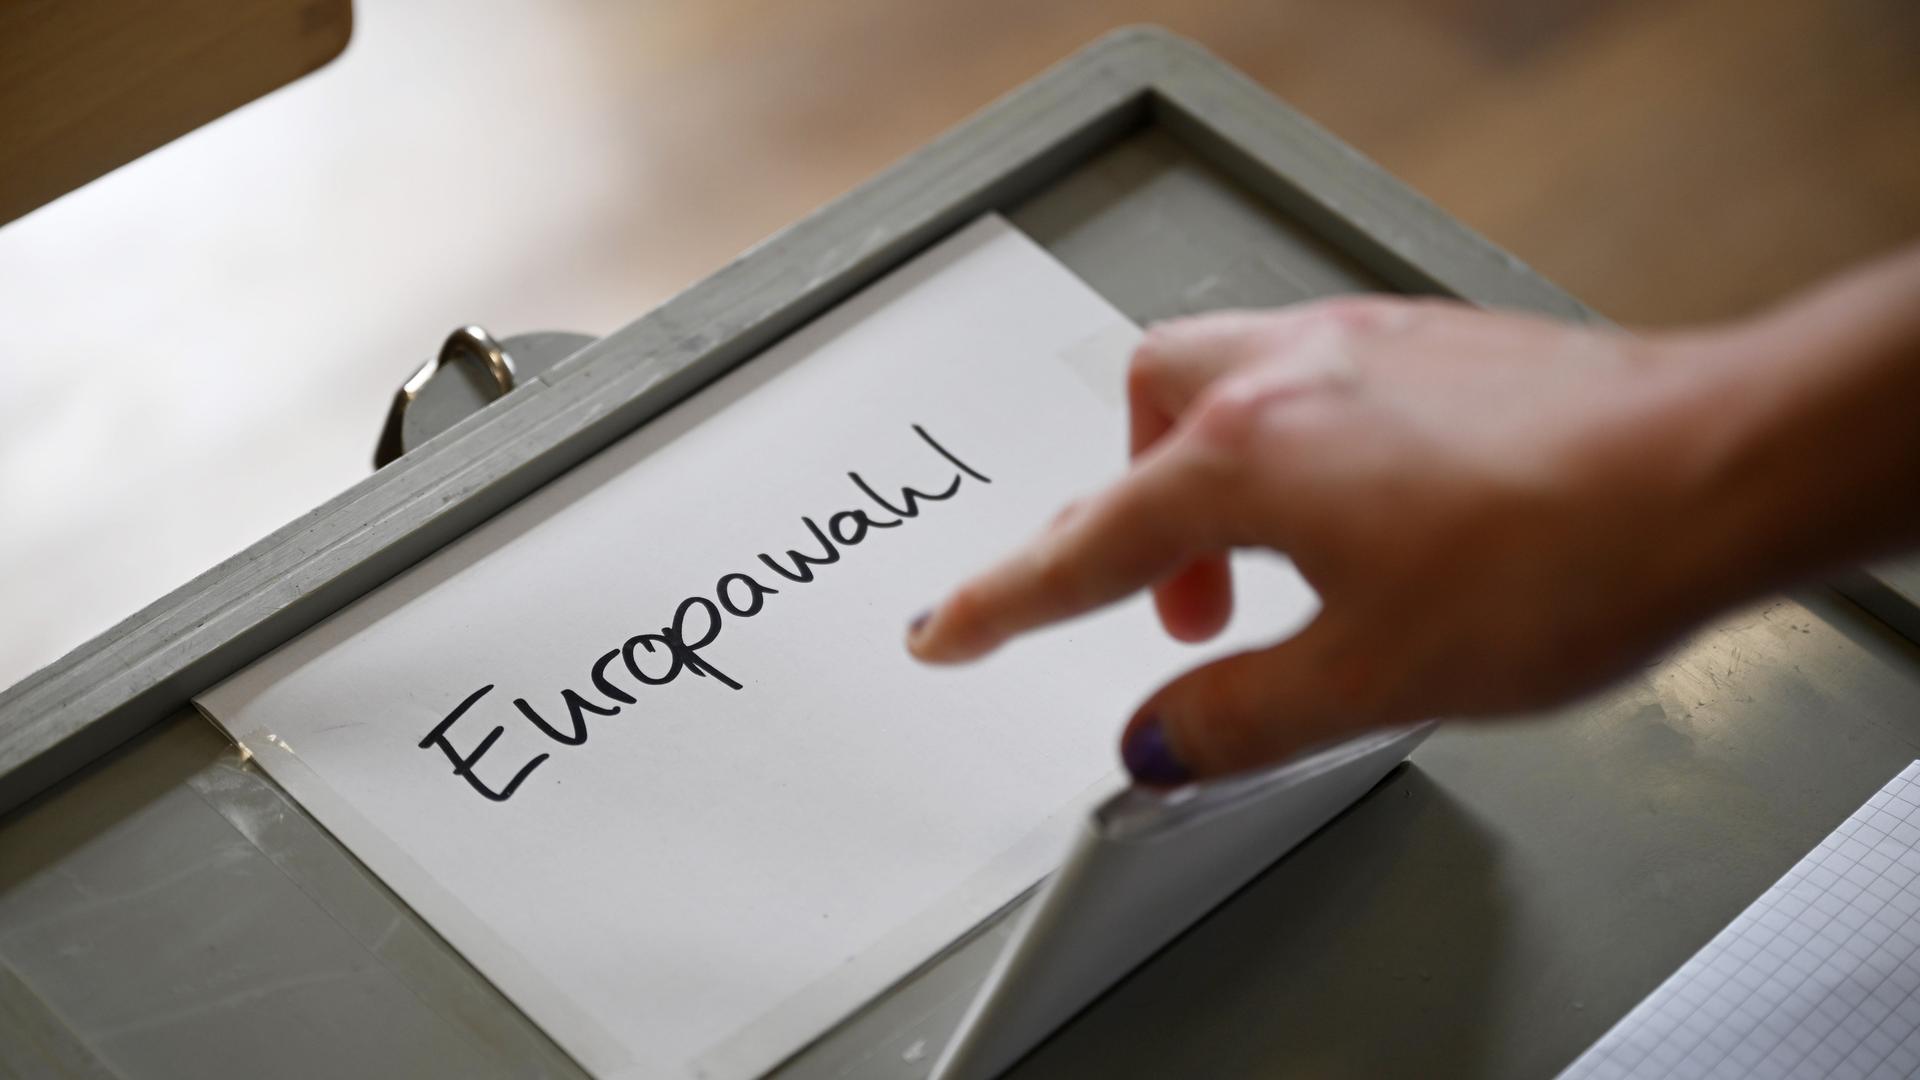 Auf einer Wahlurne steht "Europawahl". Ein Hand schmeißt einen Wahlzettel in die Urne.